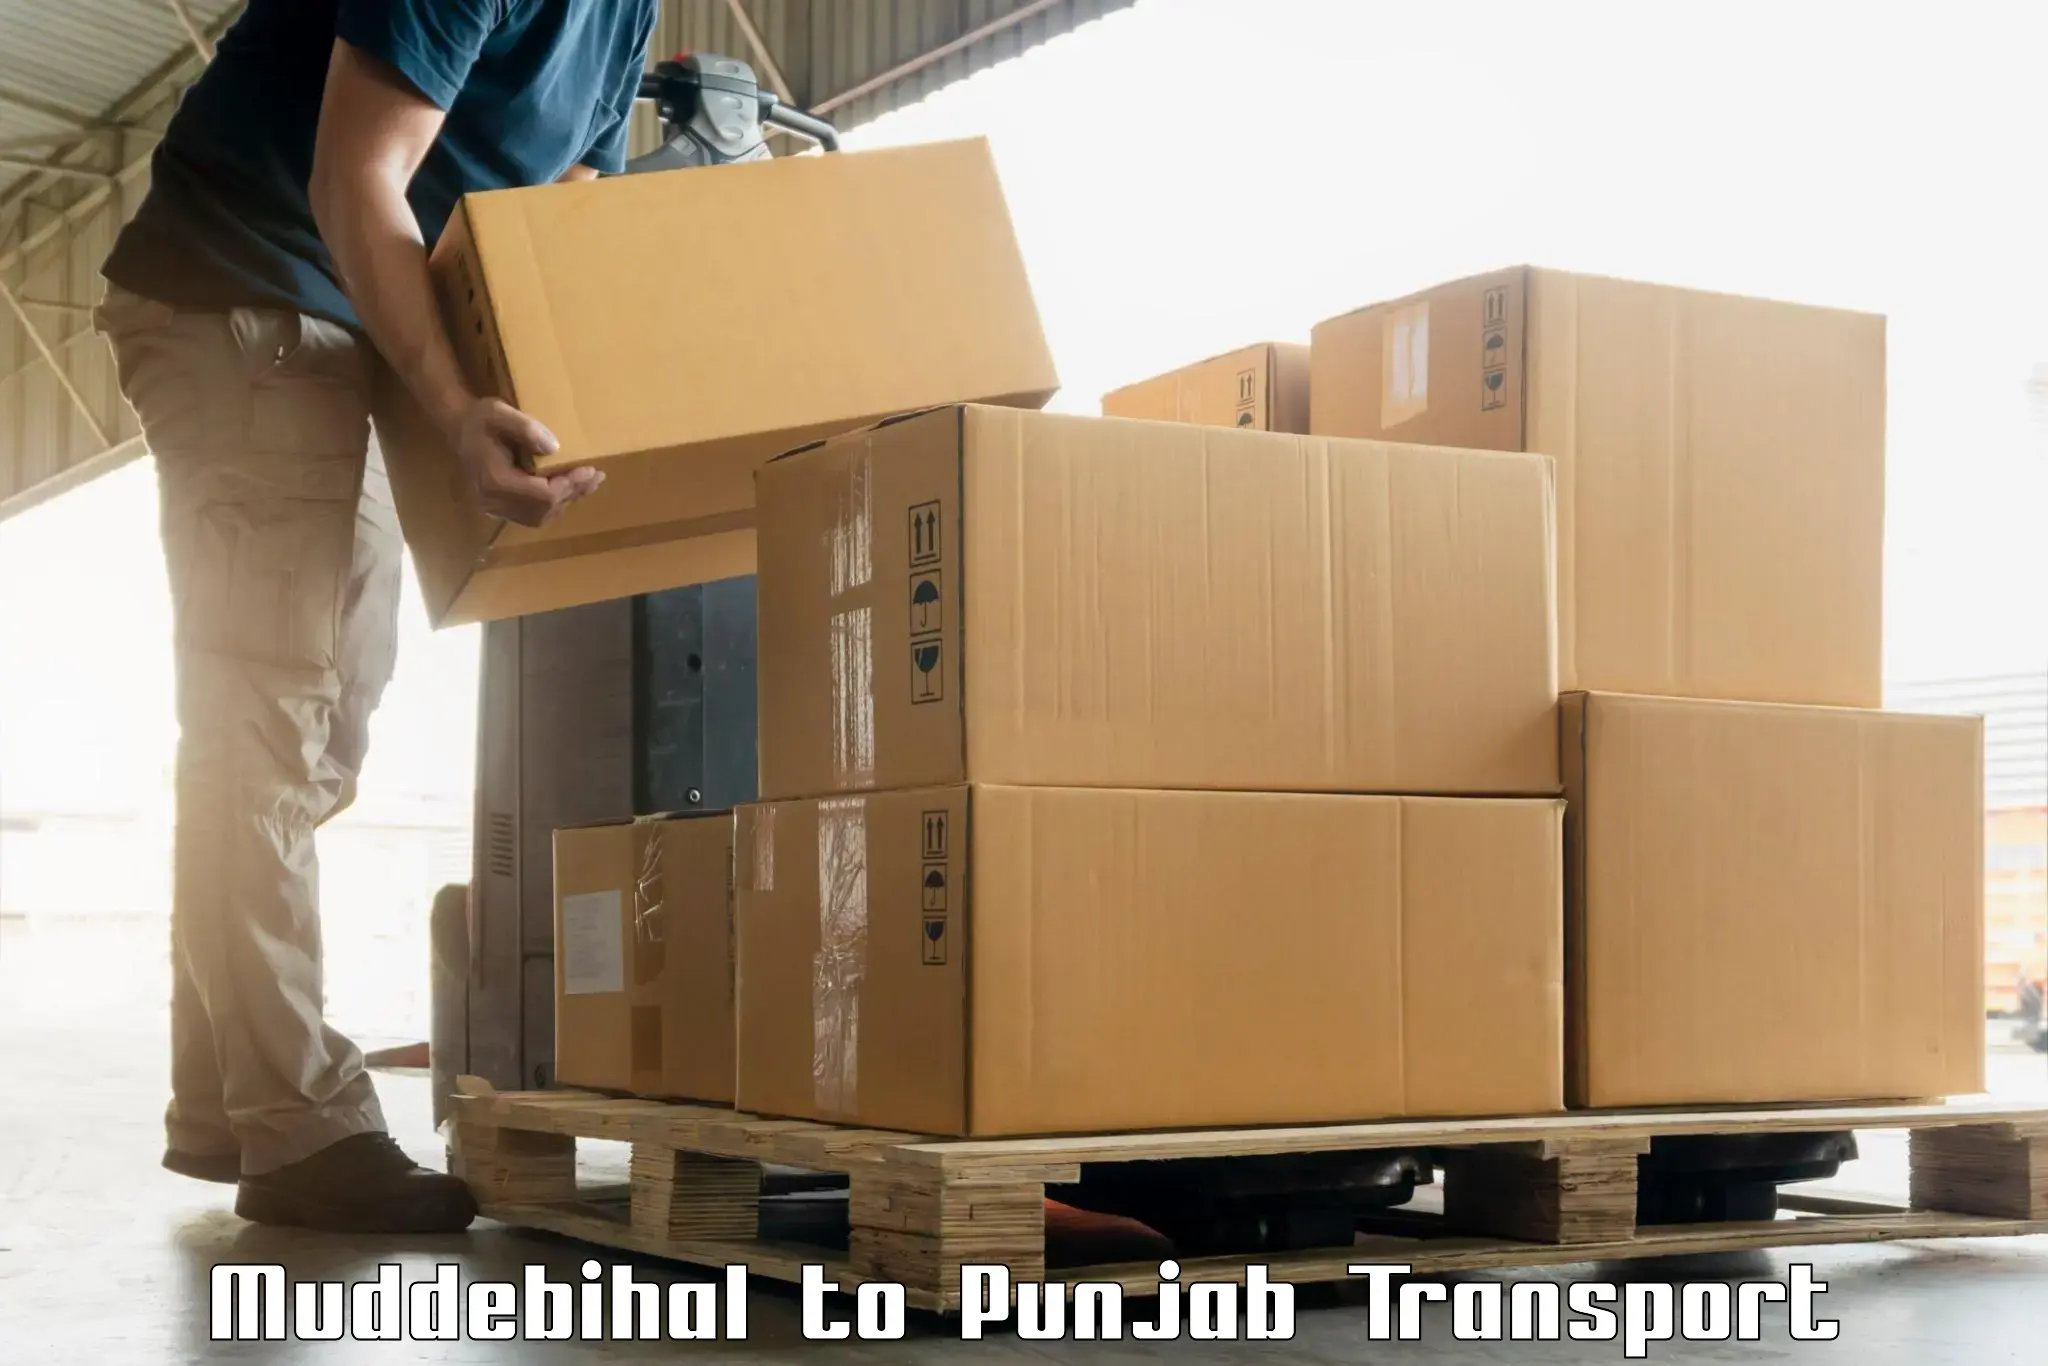 Express transport services Muddebihal to Sirhind Fatehgarh